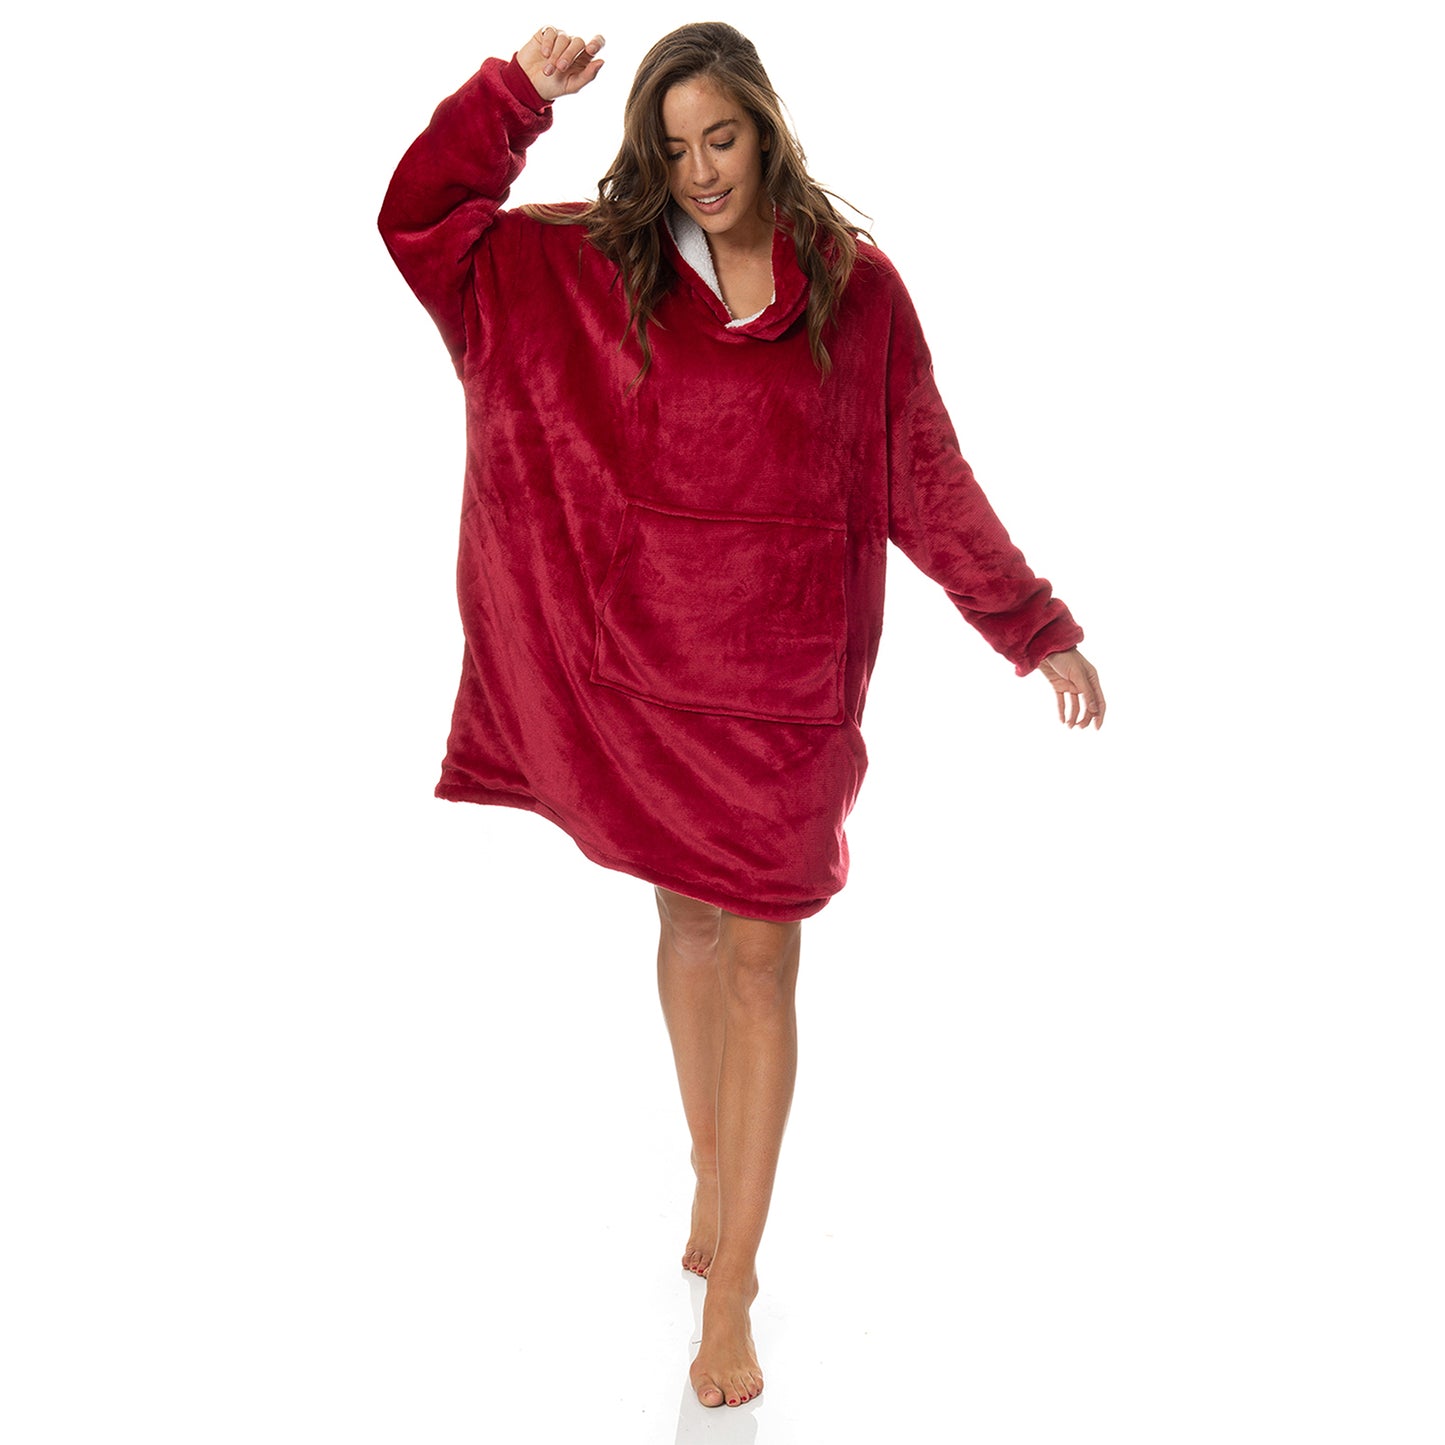 Royal Comfort Snug Hoodie Nightwear Super Soft Reversible Coral Fleece 750GSM - Red